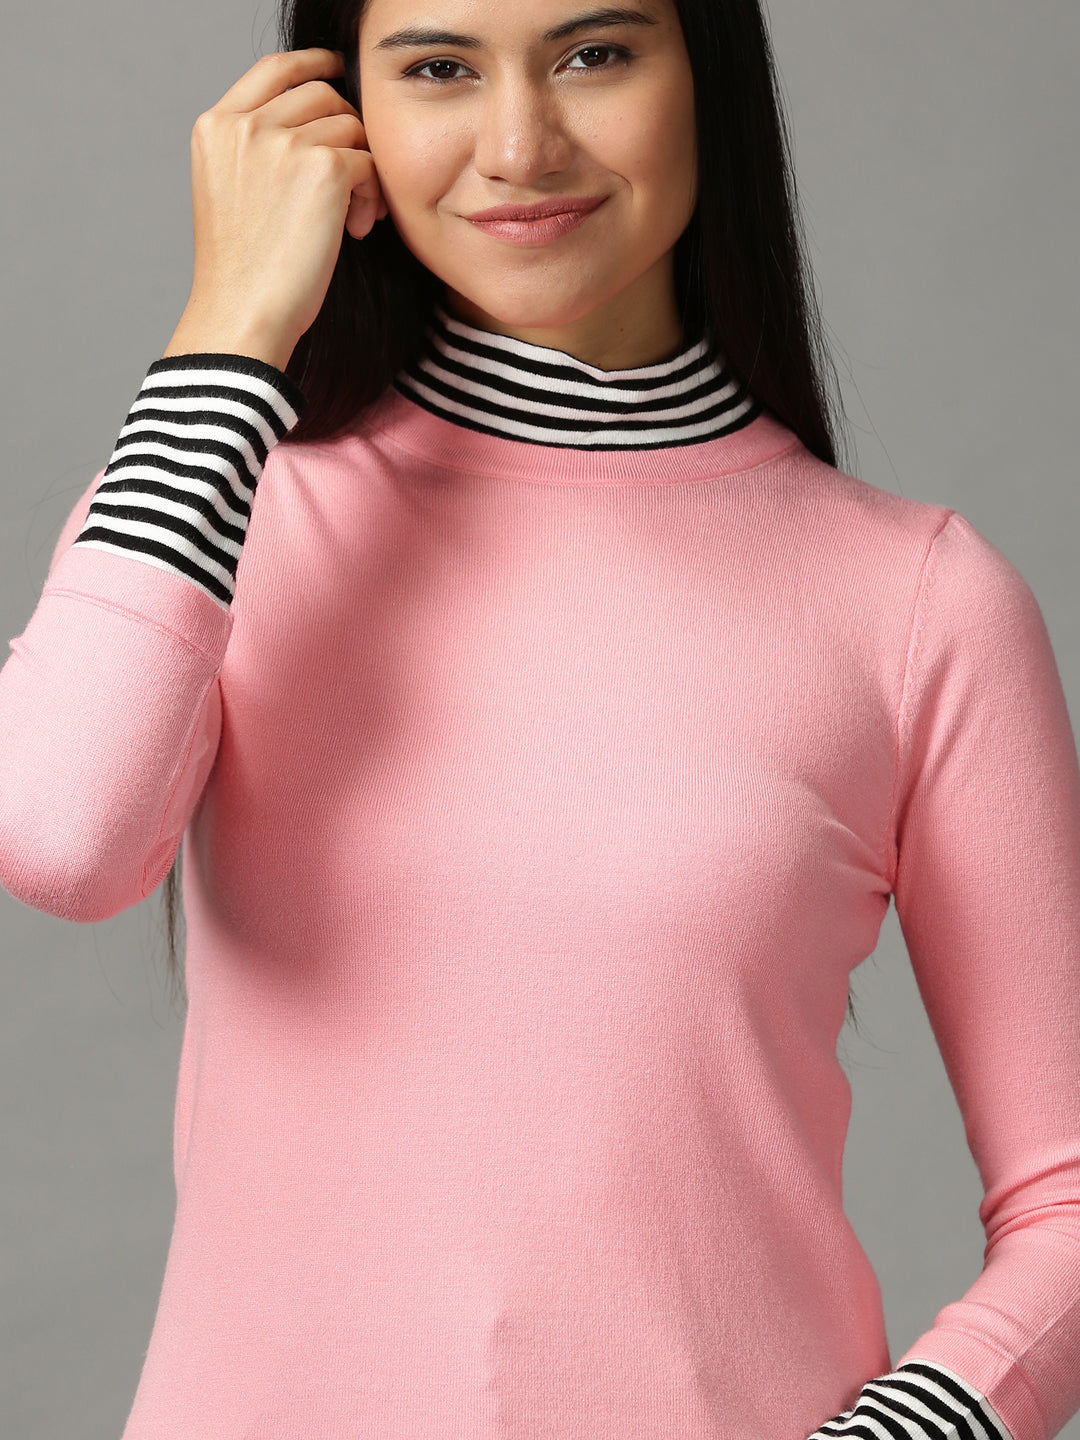 Women's Pink Solid Top